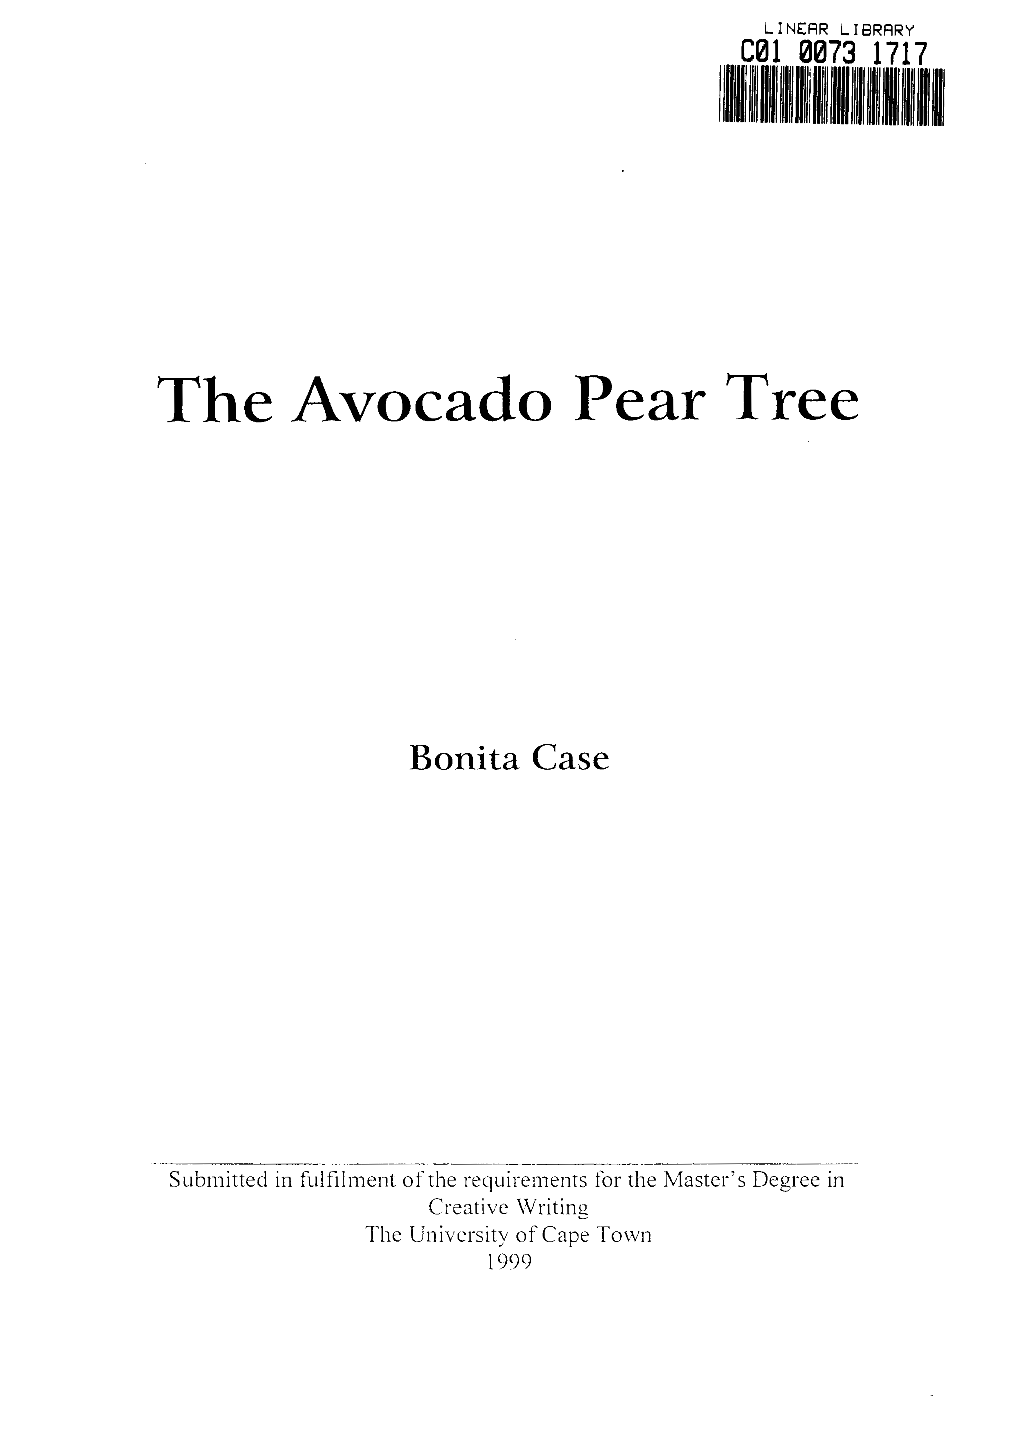 The Avocado Pear Tree